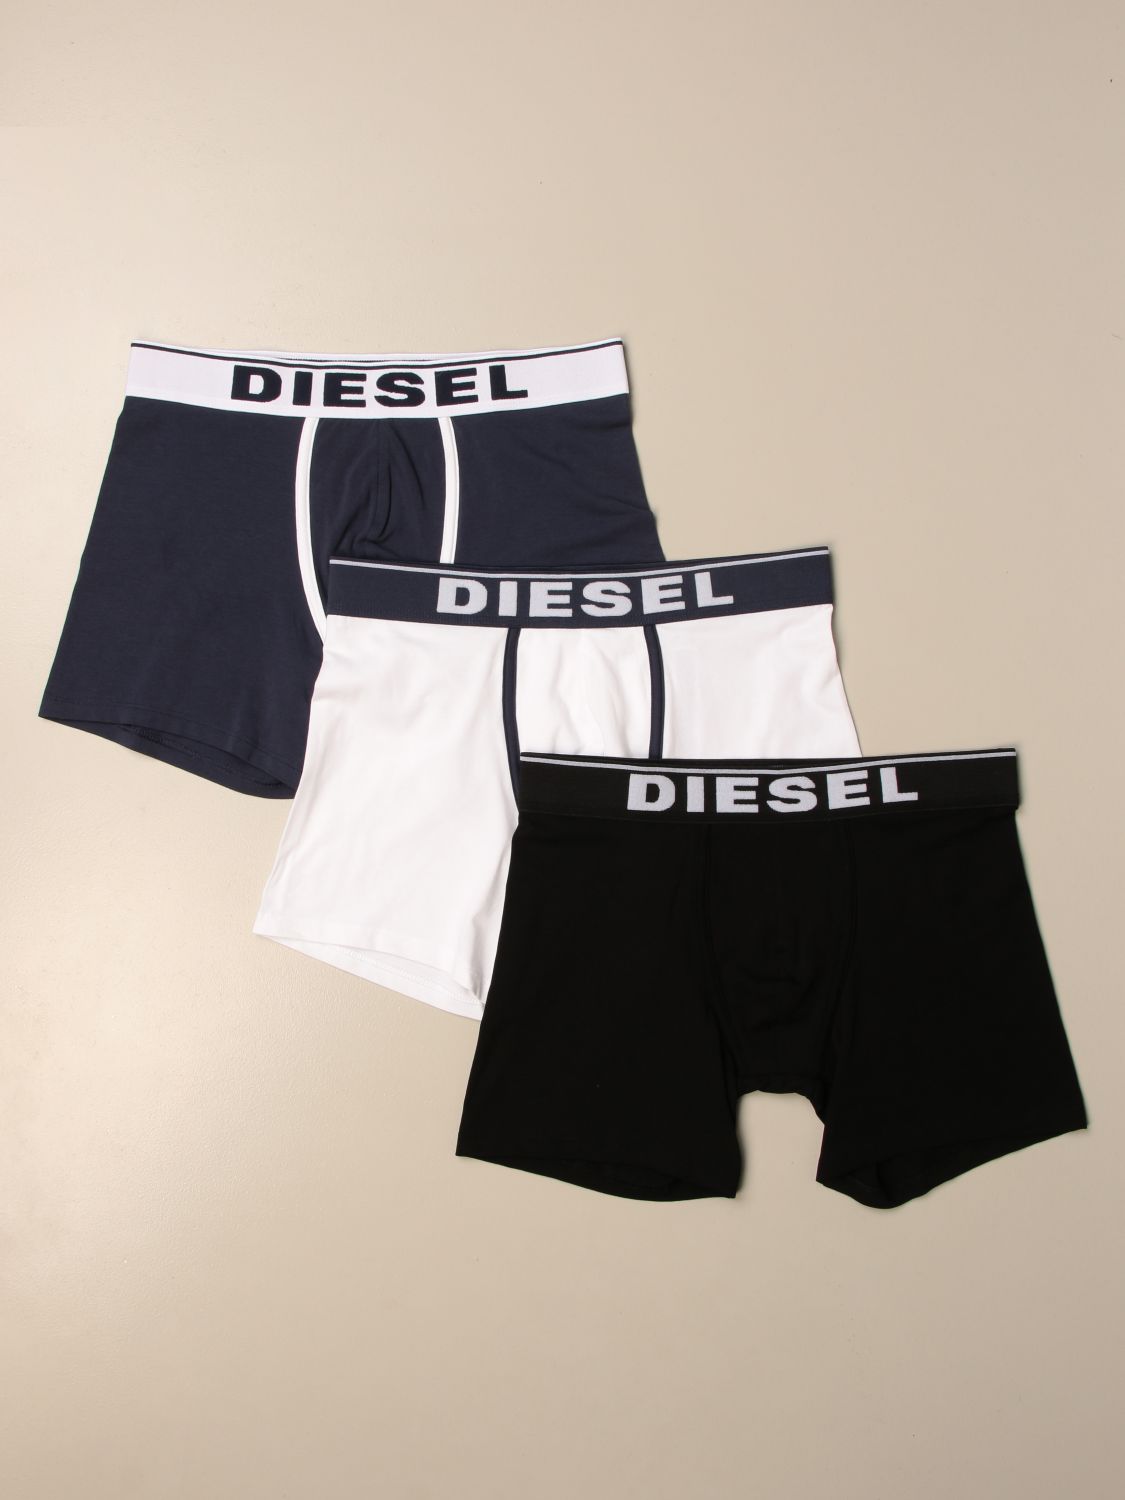 DIESEL: Set of 3 pairs of underpants with logo - Black | Diesel ...